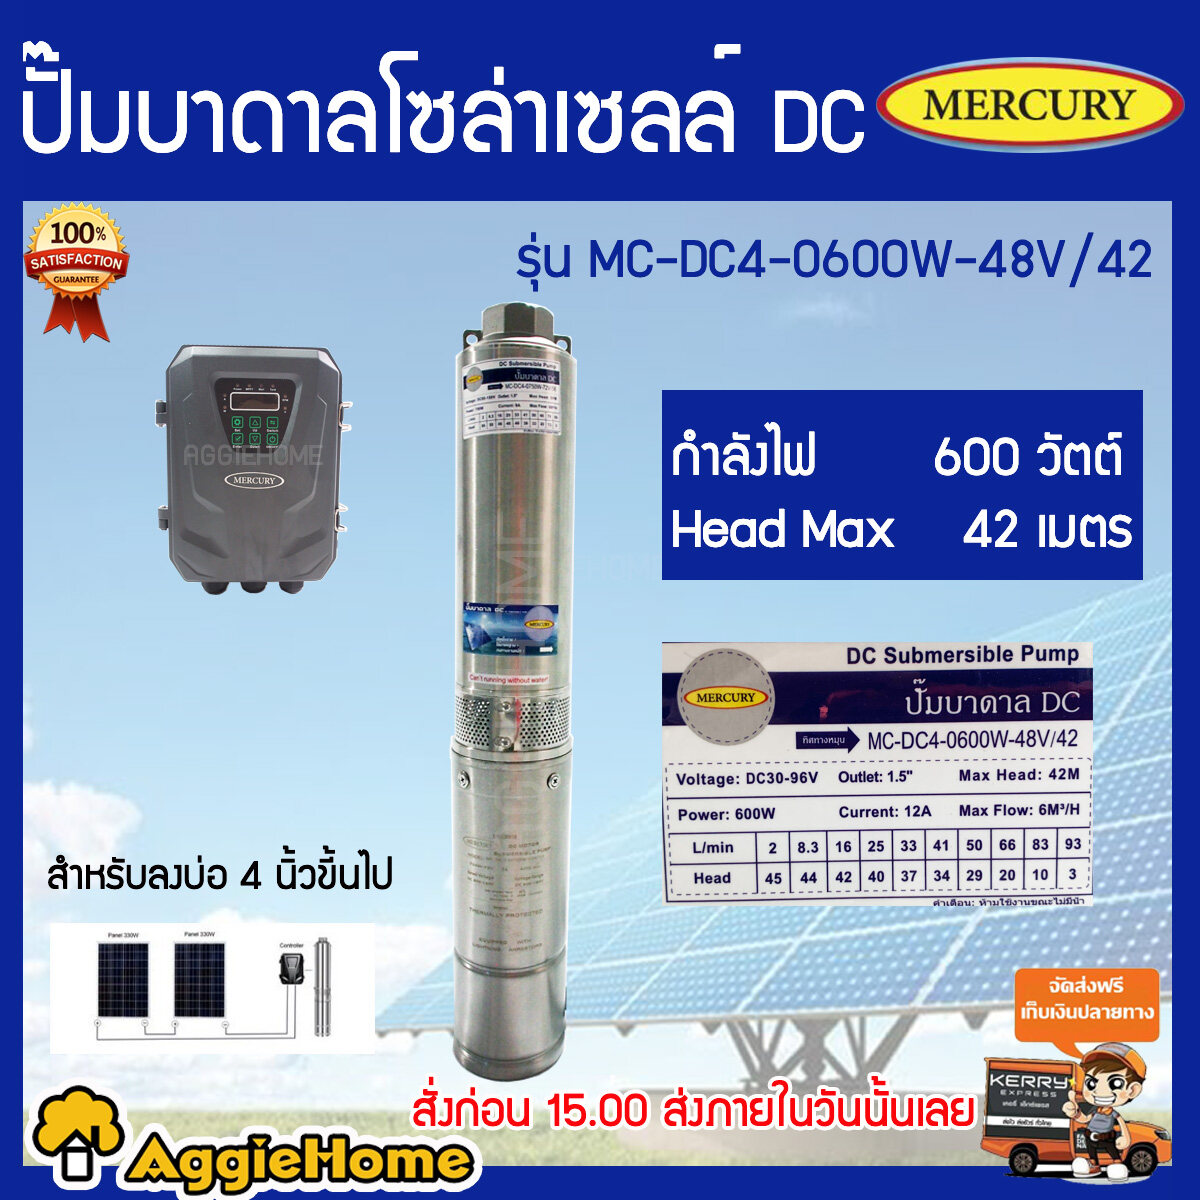 MERCURY ปั้มบาดาล รุ่น MC-DC4-0600W-48V/42